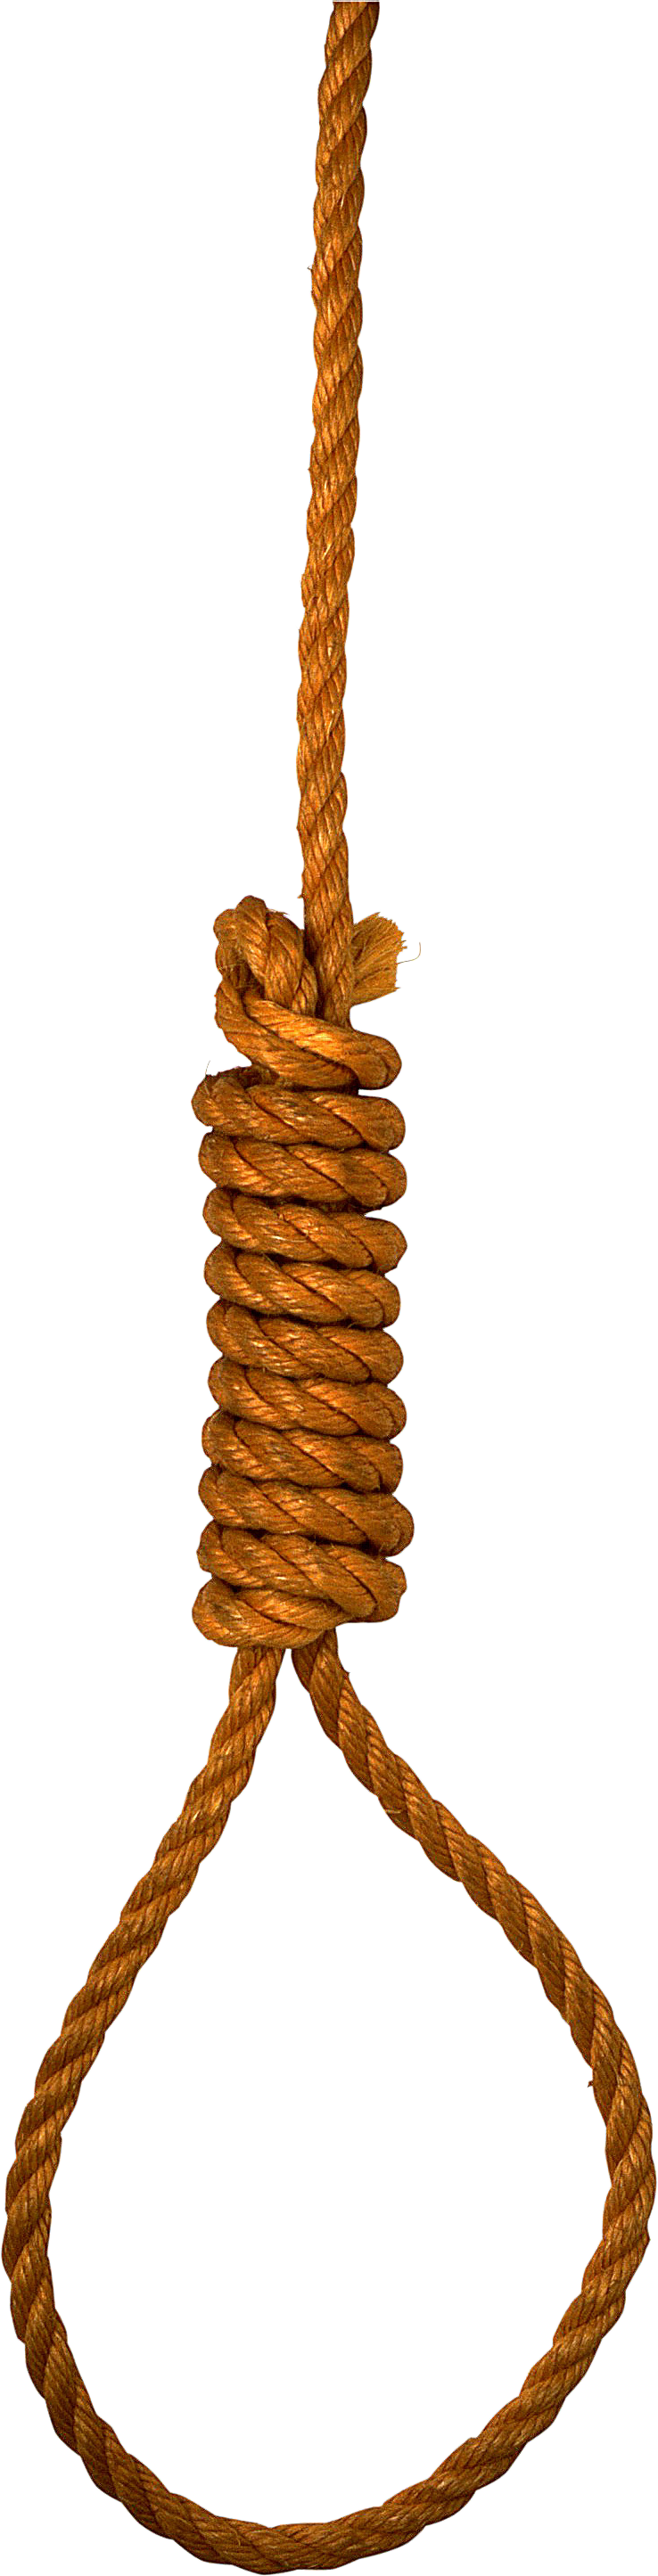 Hanging Noose Rope Loop PNG